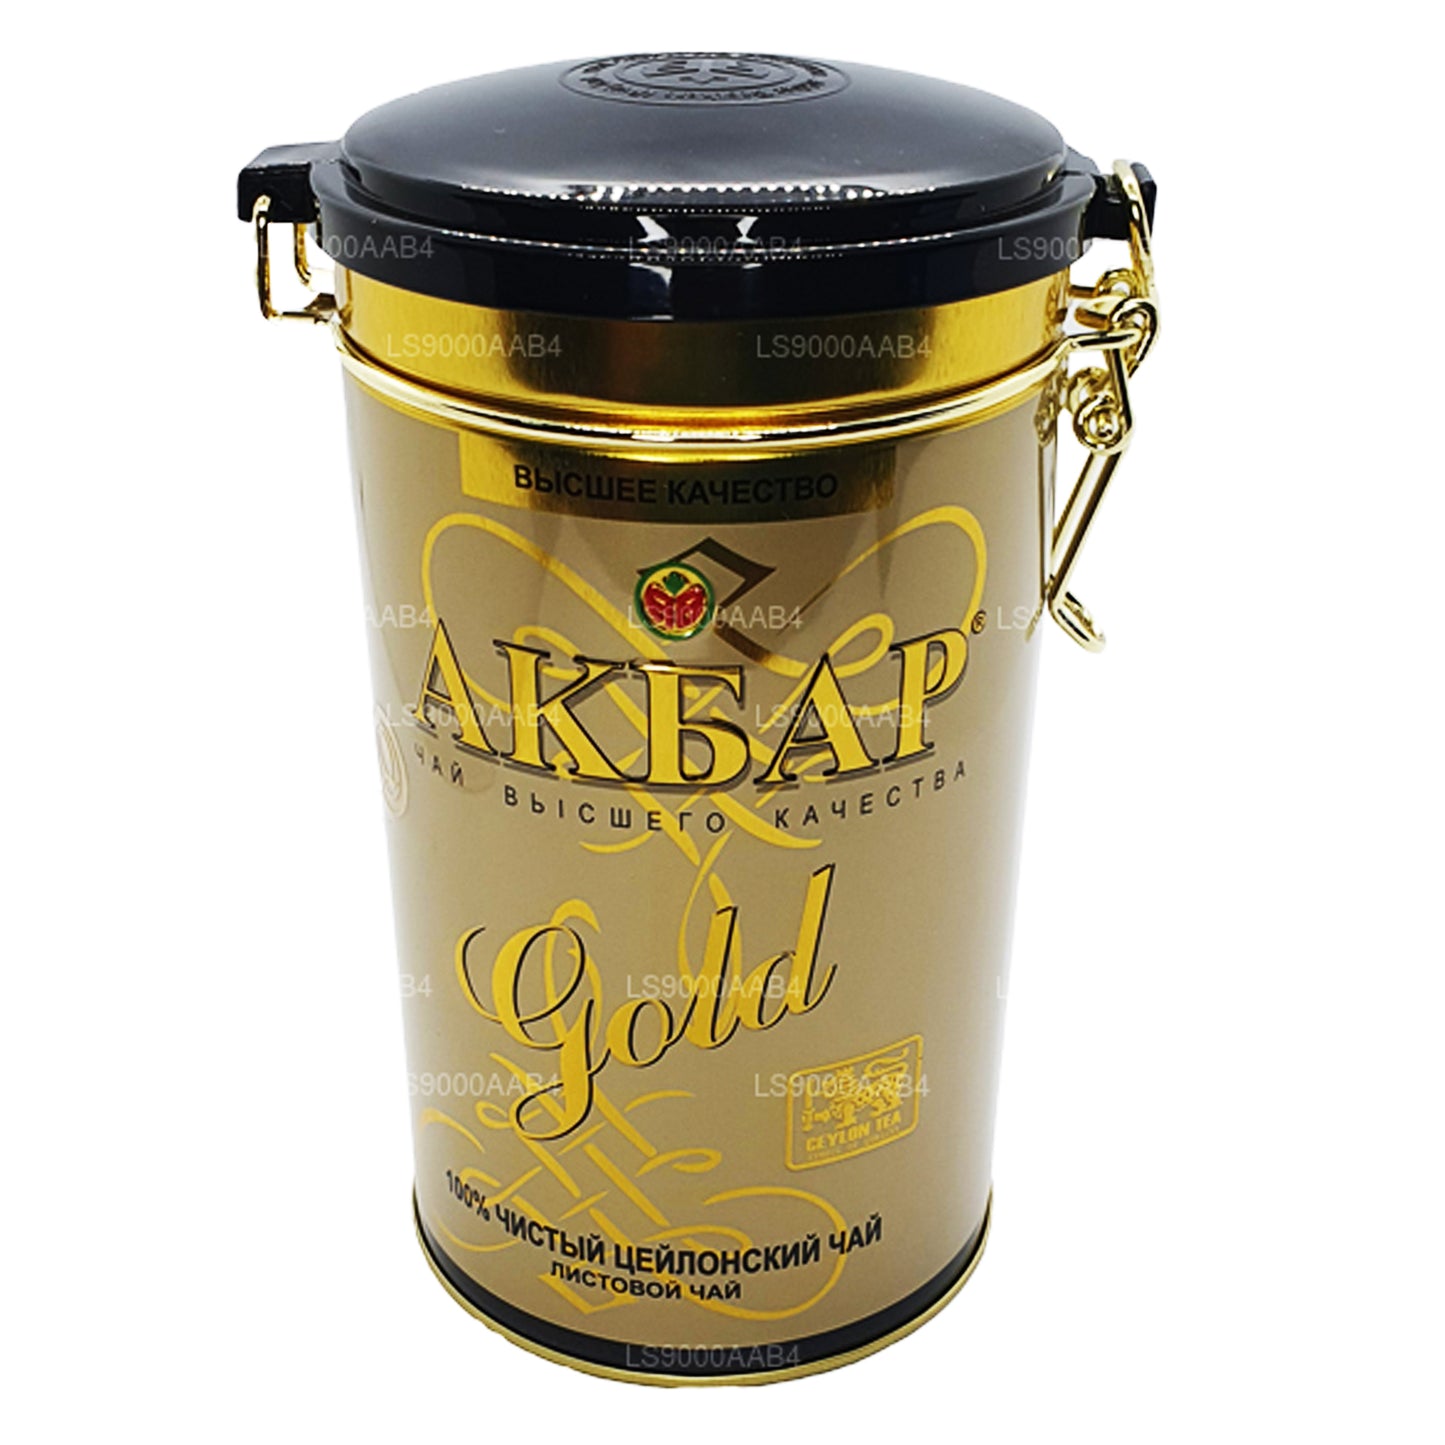 Akbar Gold Leaf Tea (225g)